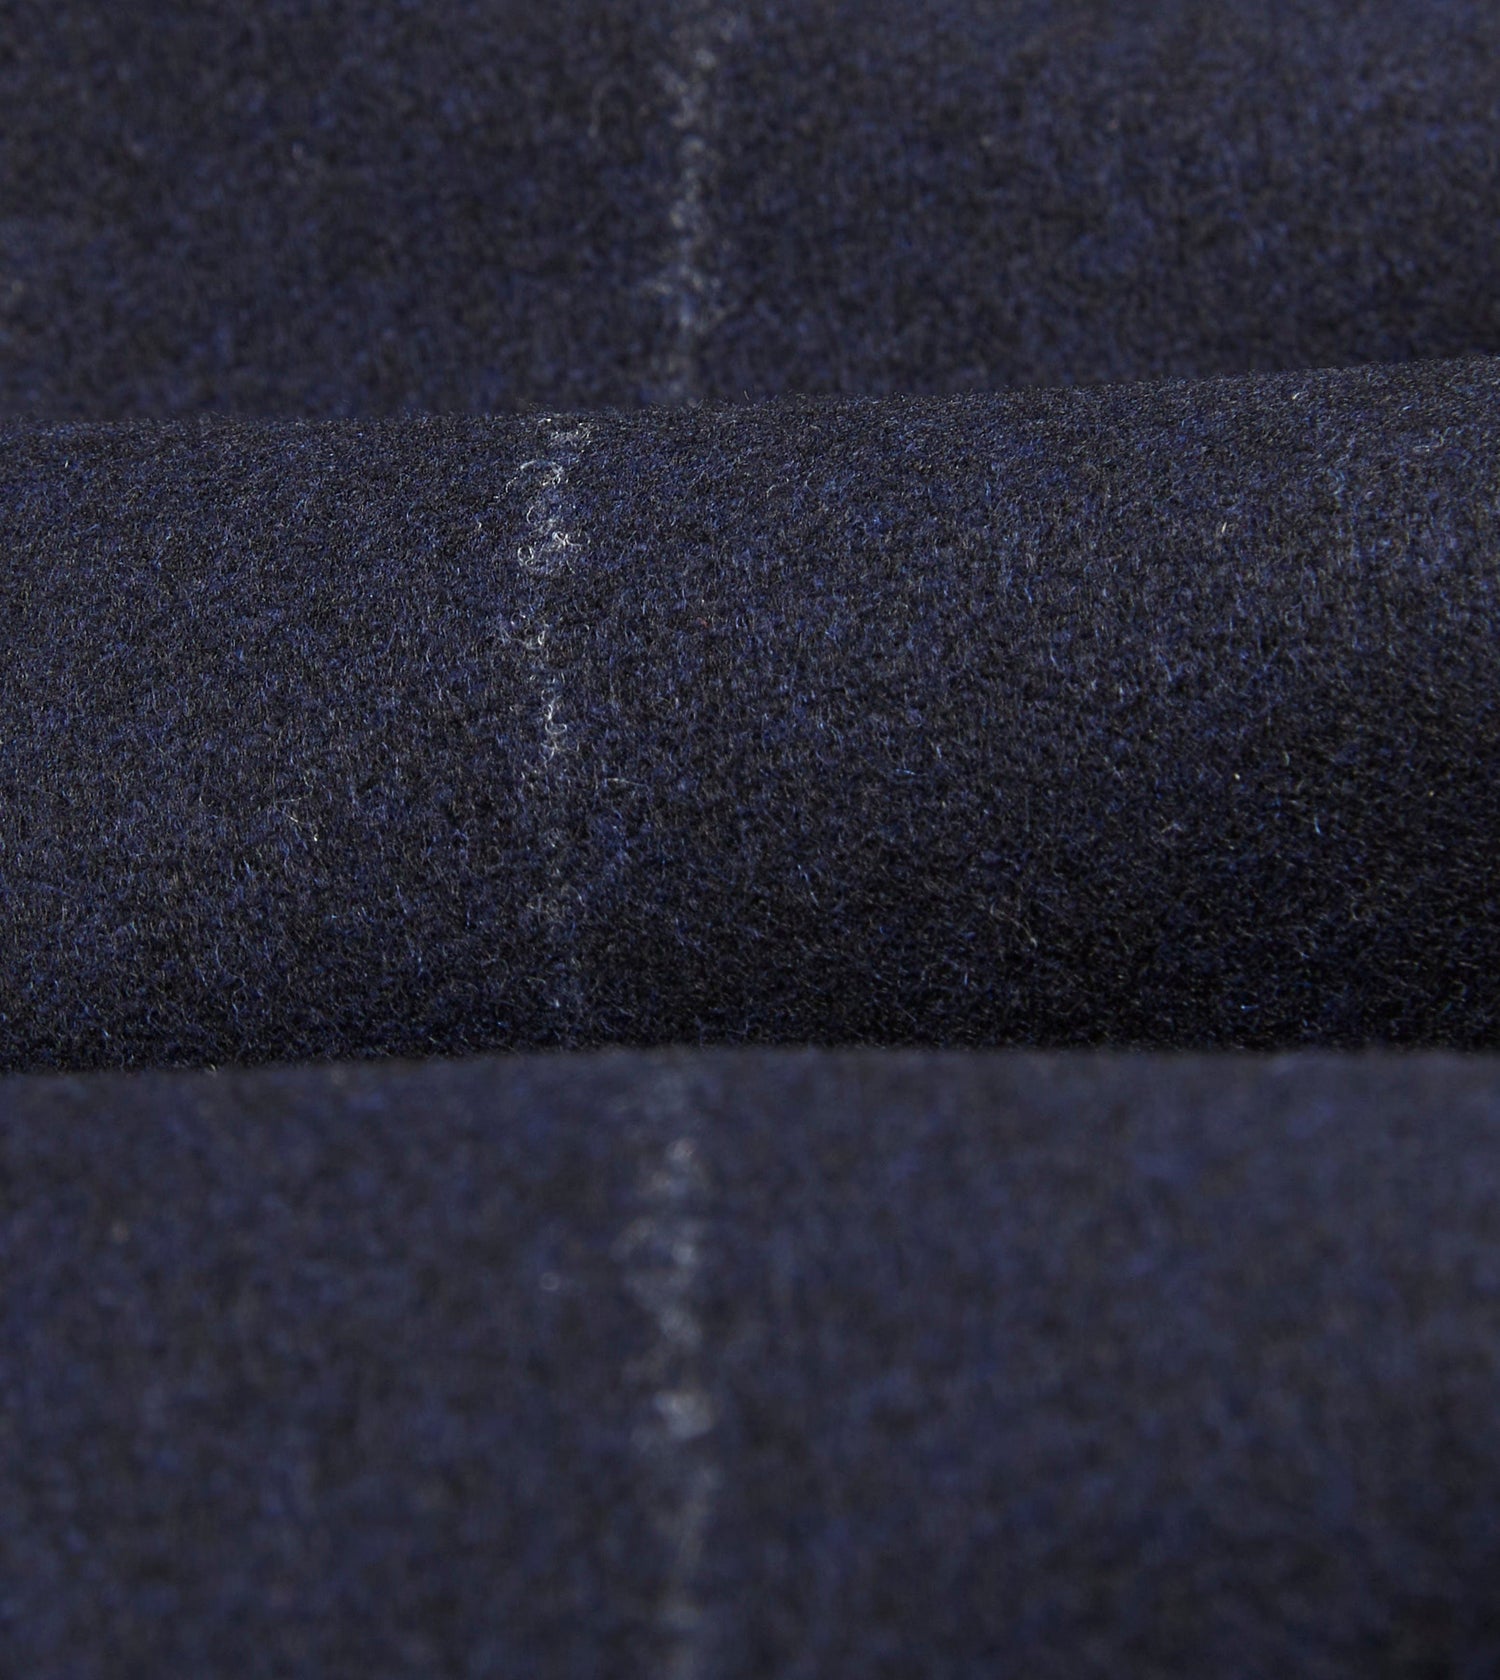 Navy Chalkstripe Wool Flannel Single Pleat Trouser